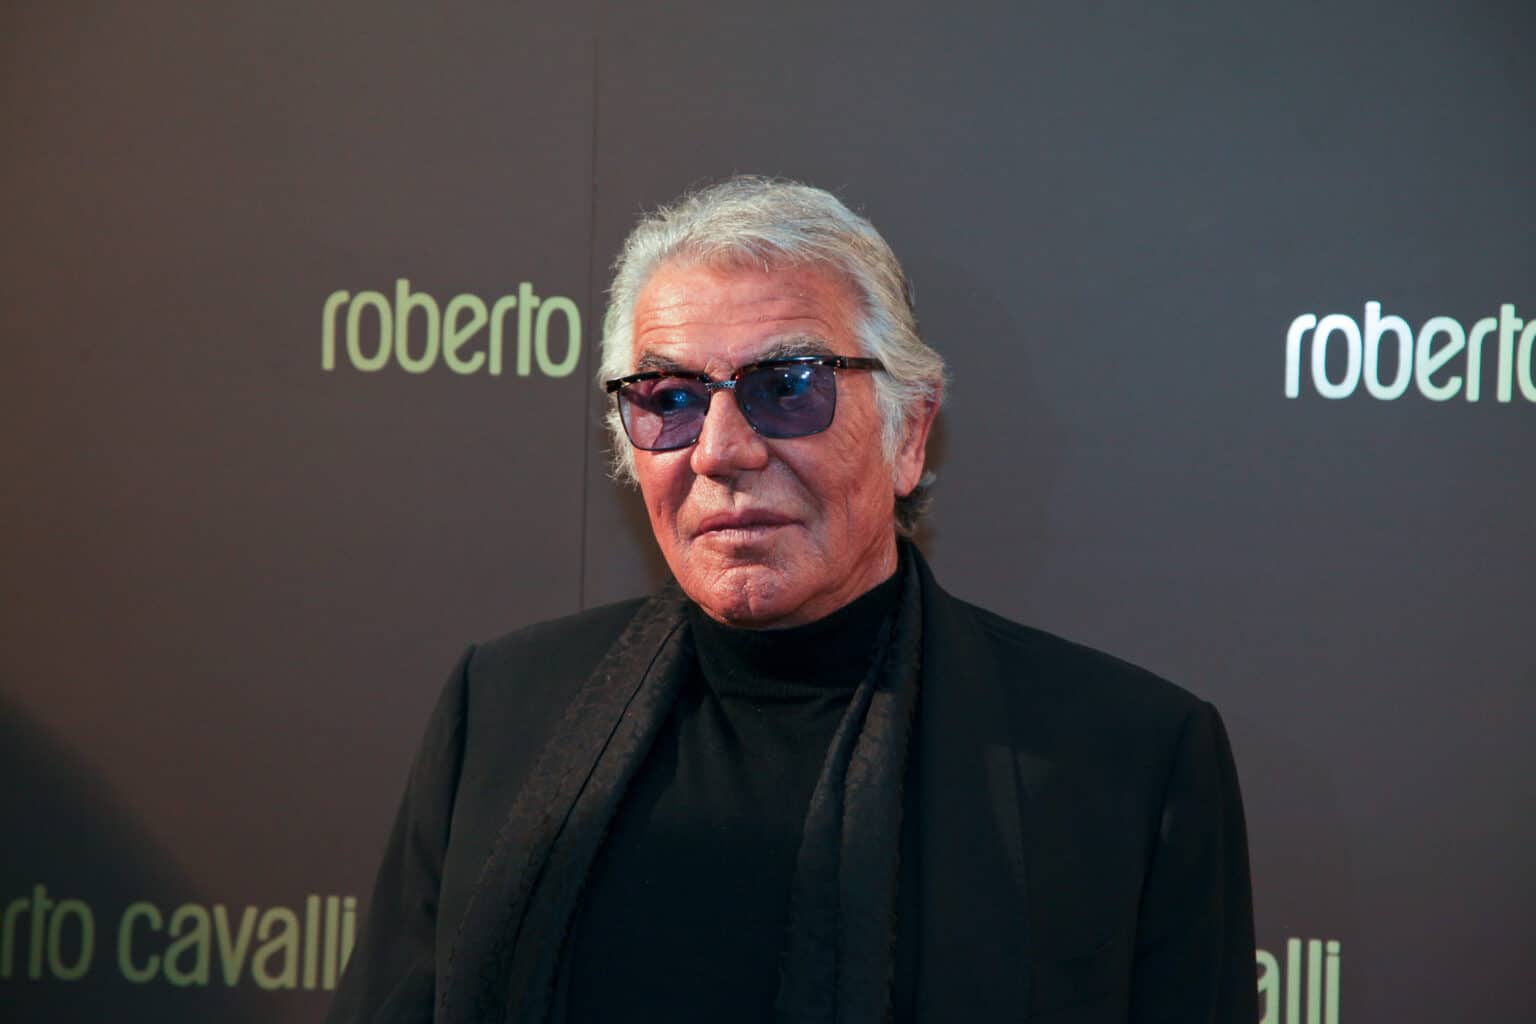 מעצב האופנה האיטלקי רוברטו קוואלי הלך לעולמו בגיל 83